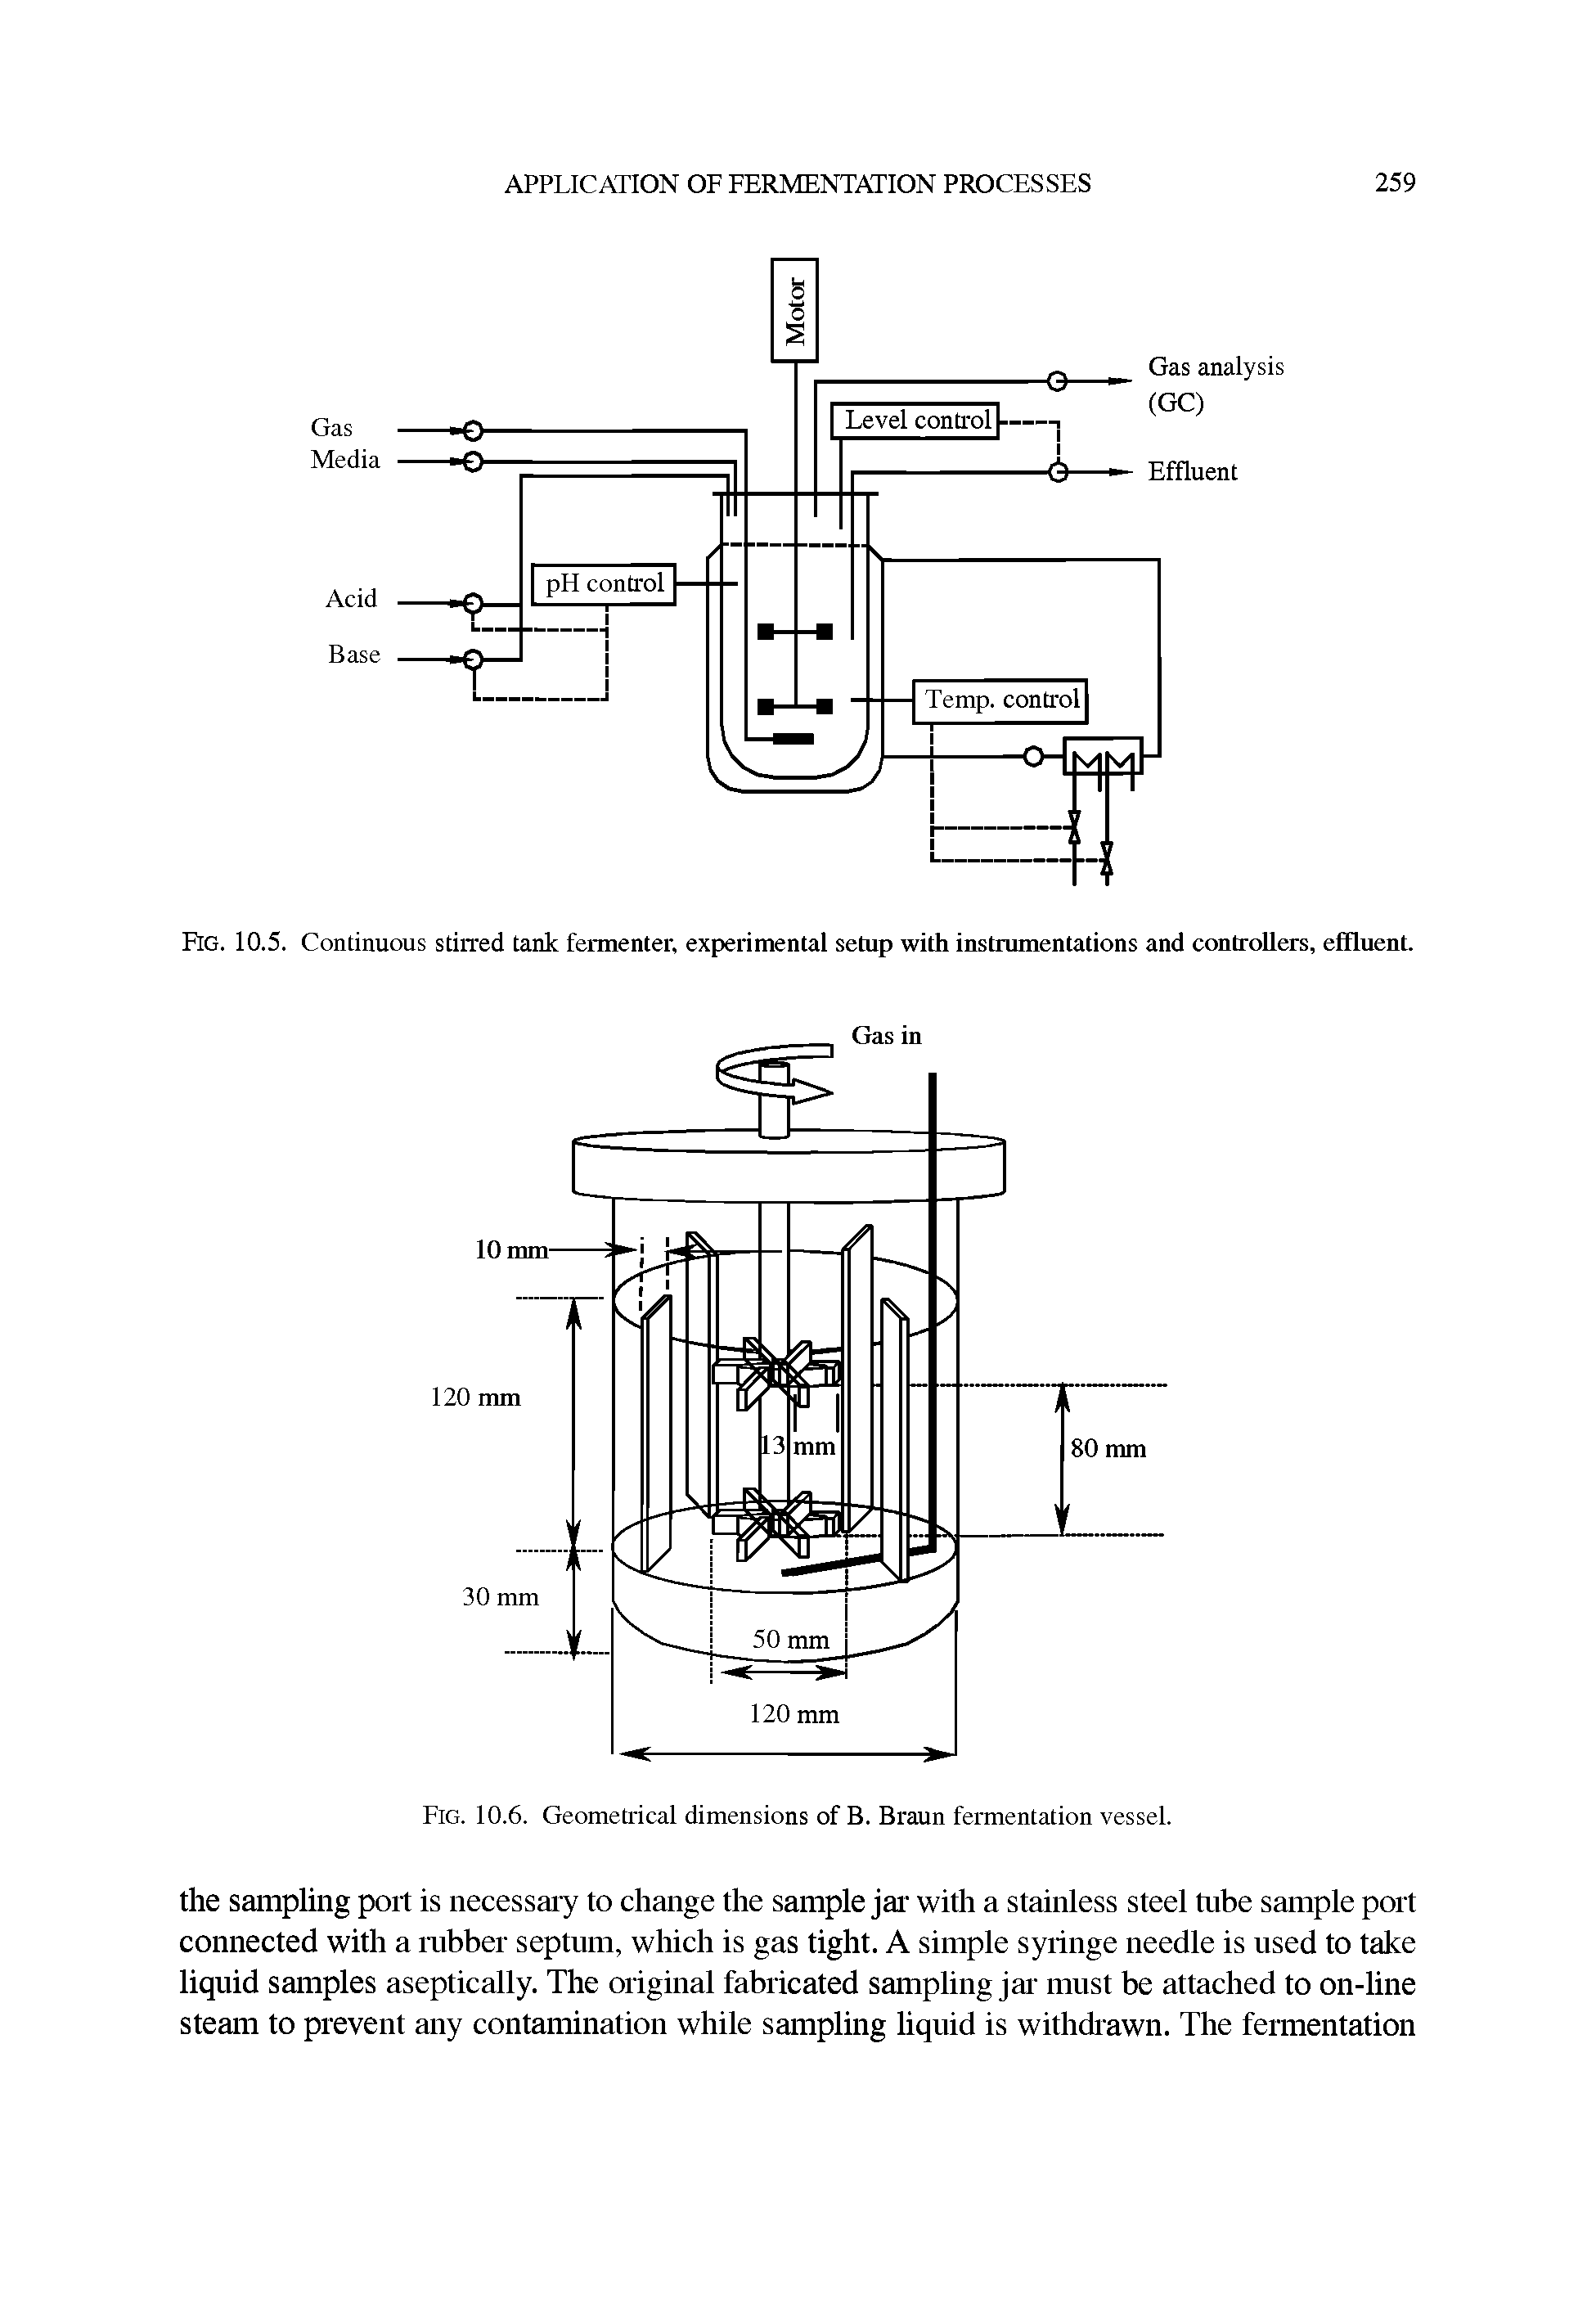 Fig. 10.6. Geomeh ical dimensions of B. Braun fermentation vessel.